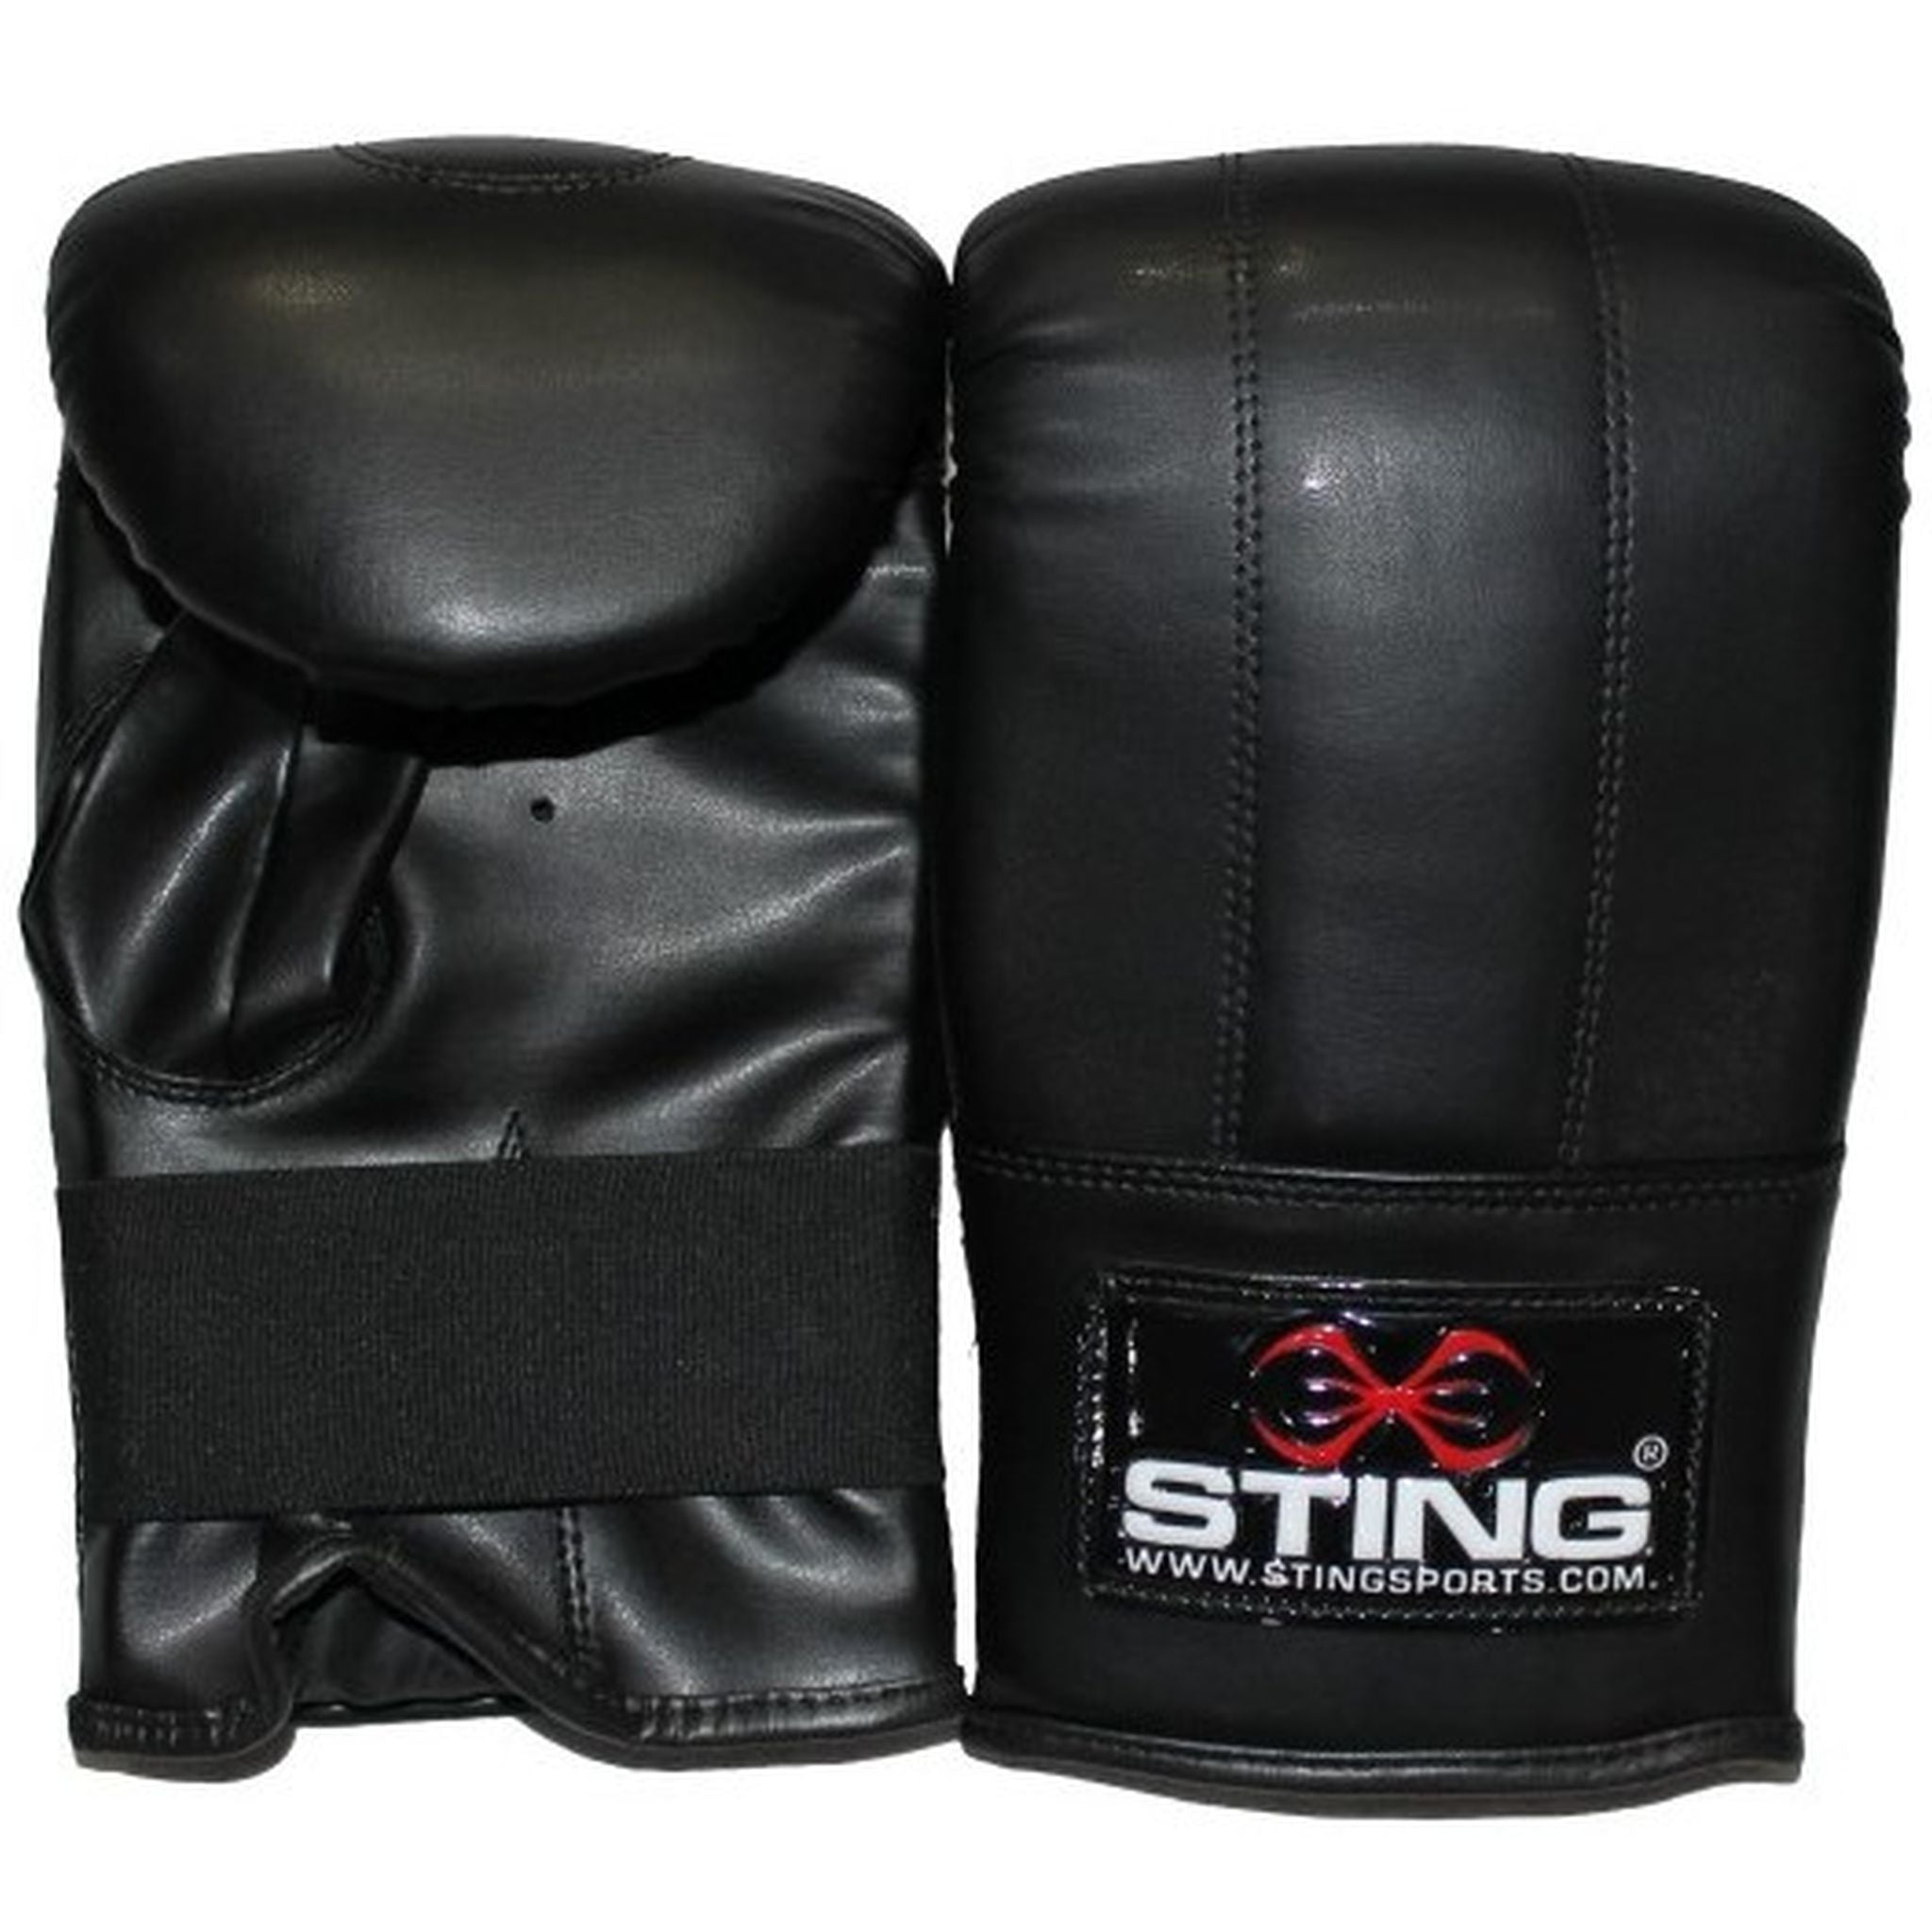 STING 2 Stitch Large Boxing Glove